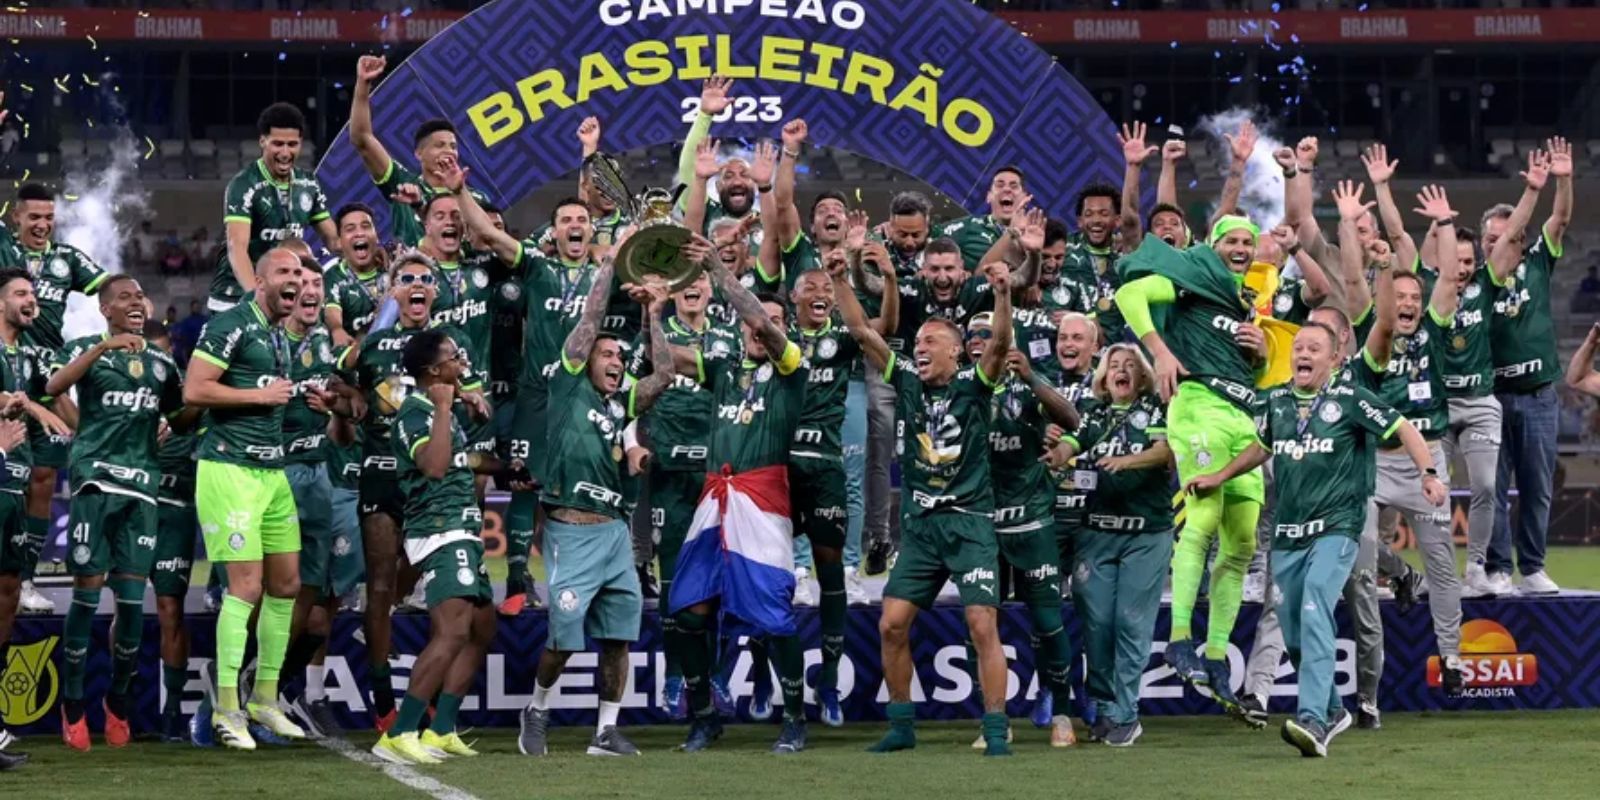 Quanto seu time vai faturar? Veja a premiação do Campeonato Brasileiro 2023  - ISTOÉ DINHEIRO